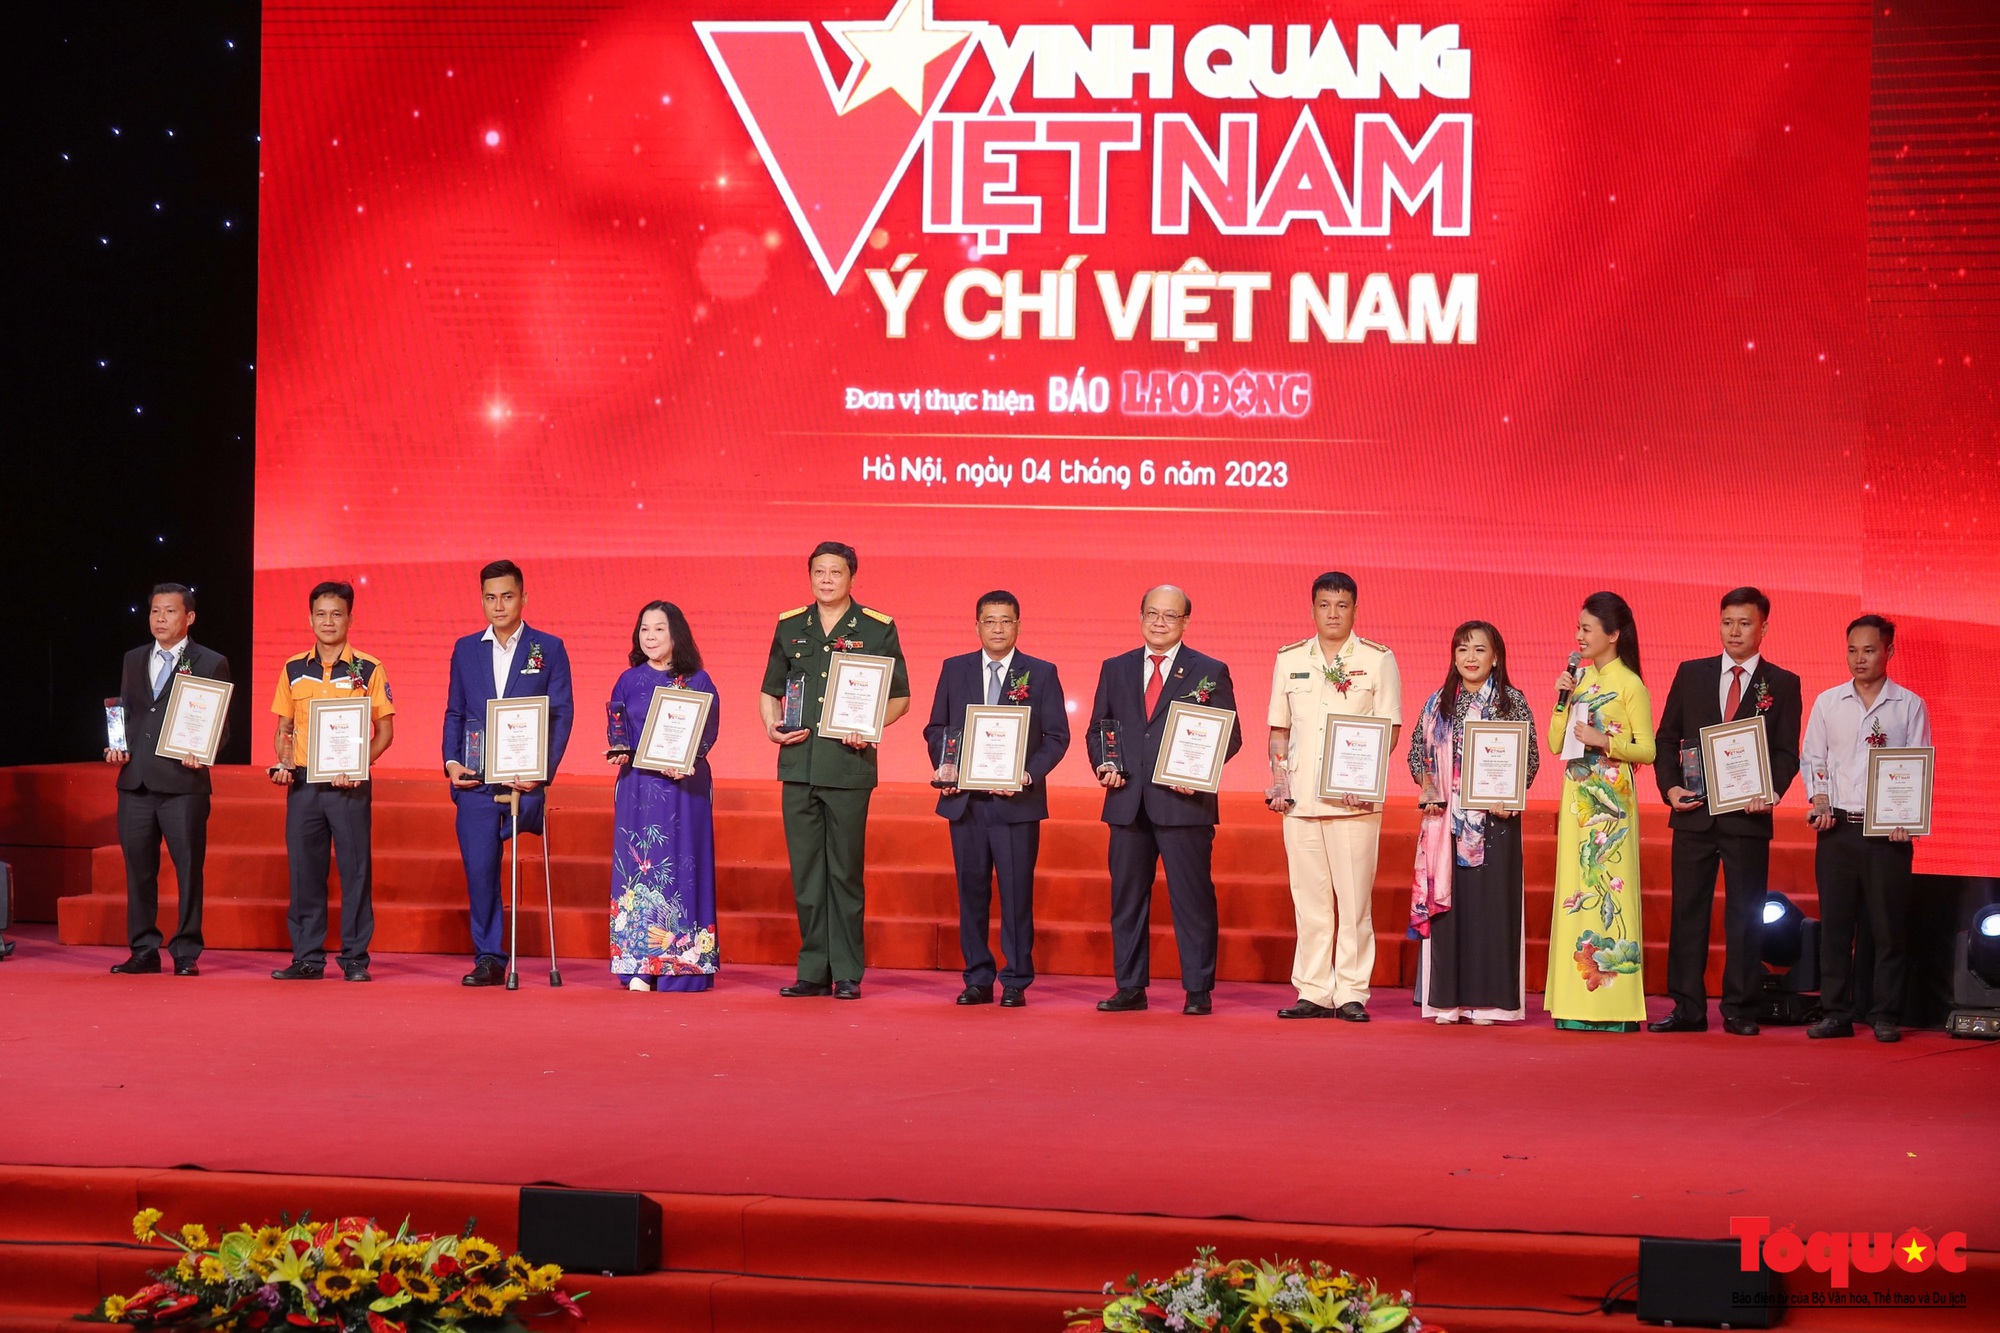 Vinh quang Việt Nam tôn vinh ý chí những cô gái vàng của bóng đá Việt Nam - Ảnh 6.